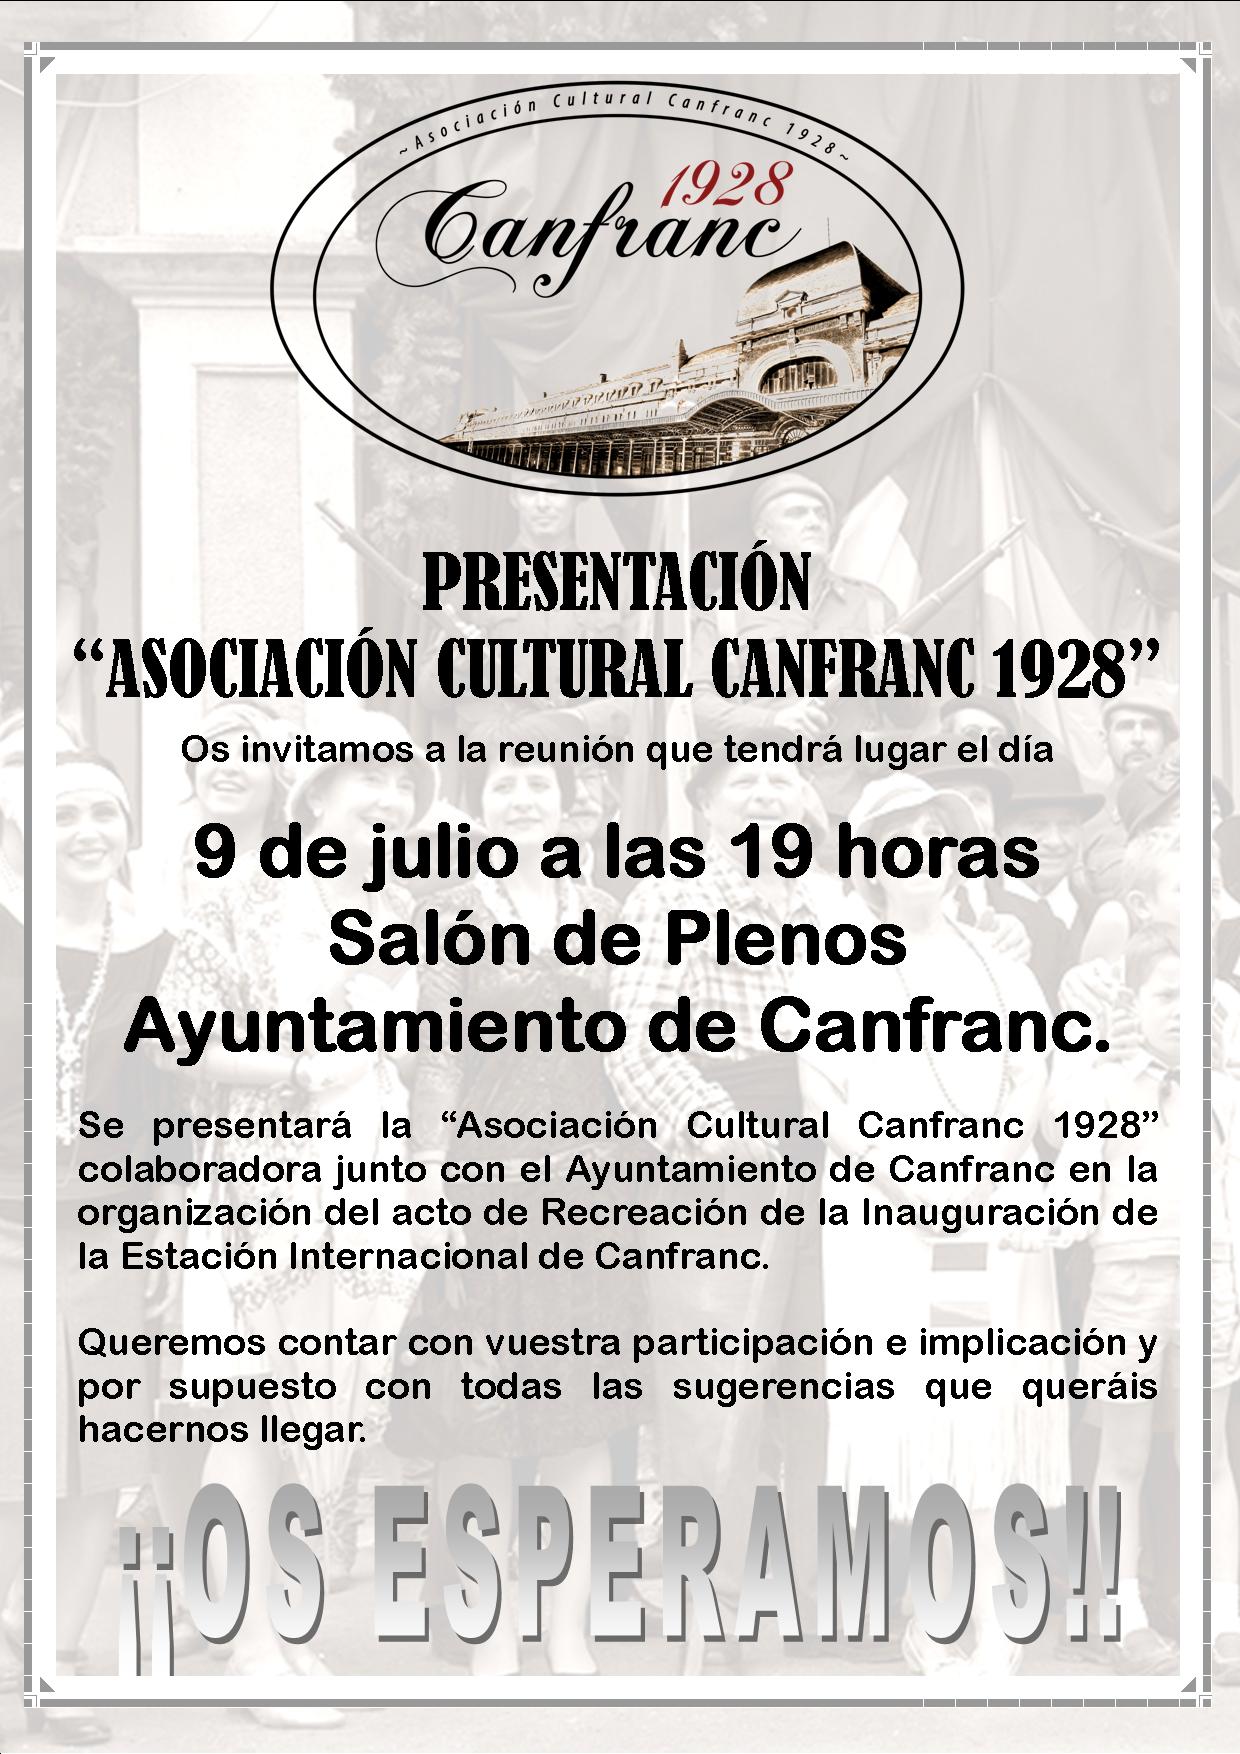 Presentación de la “Asoc. Cultural Canfranc 1928”